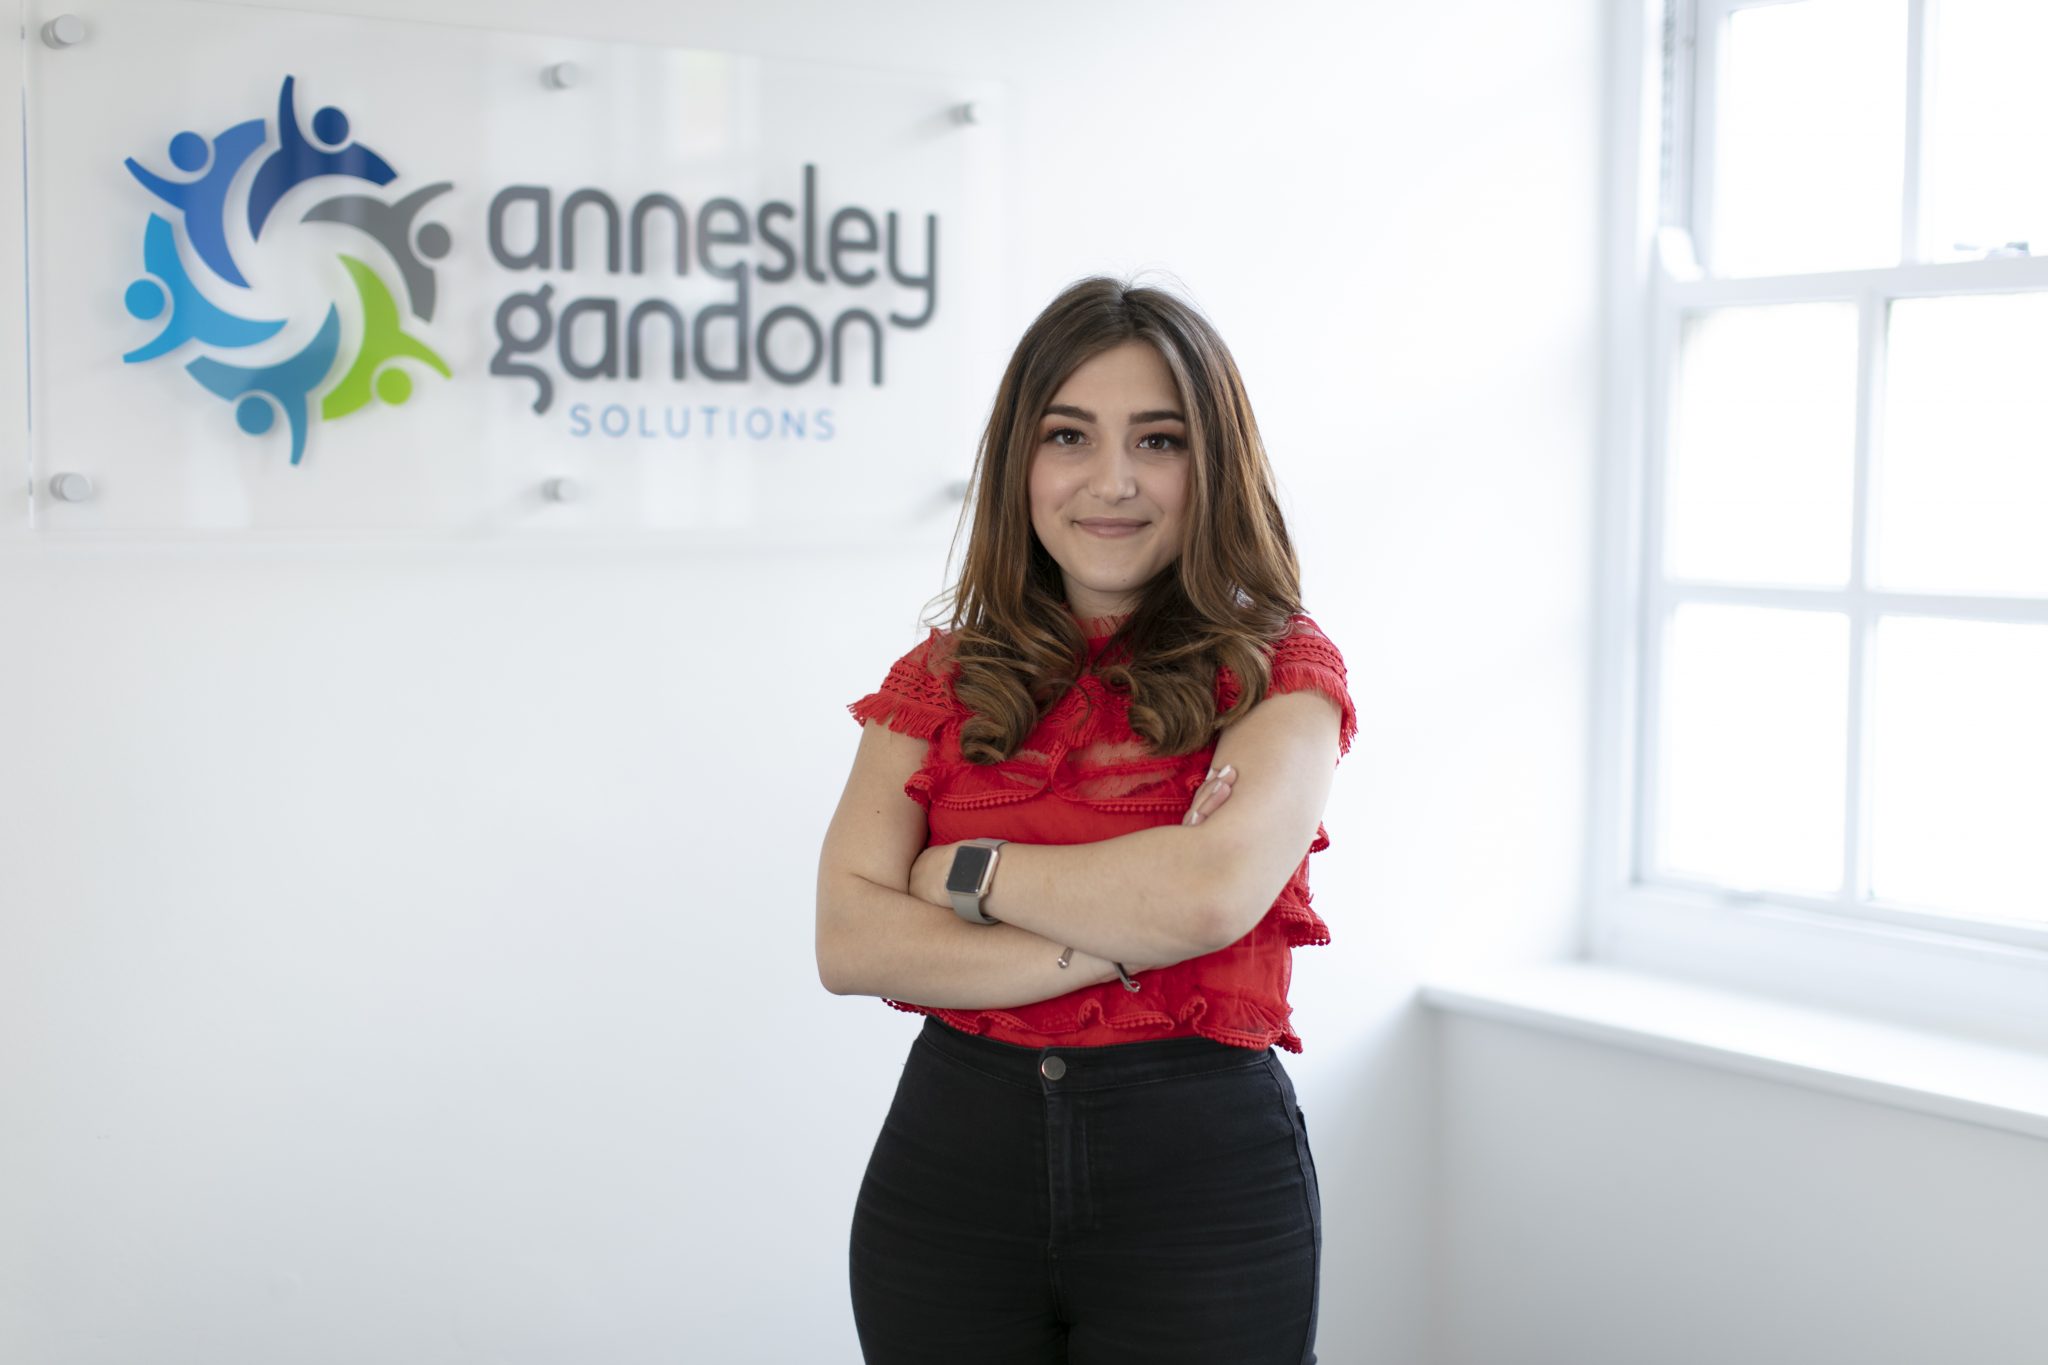 Annesley Gandon | Recruiting a Team